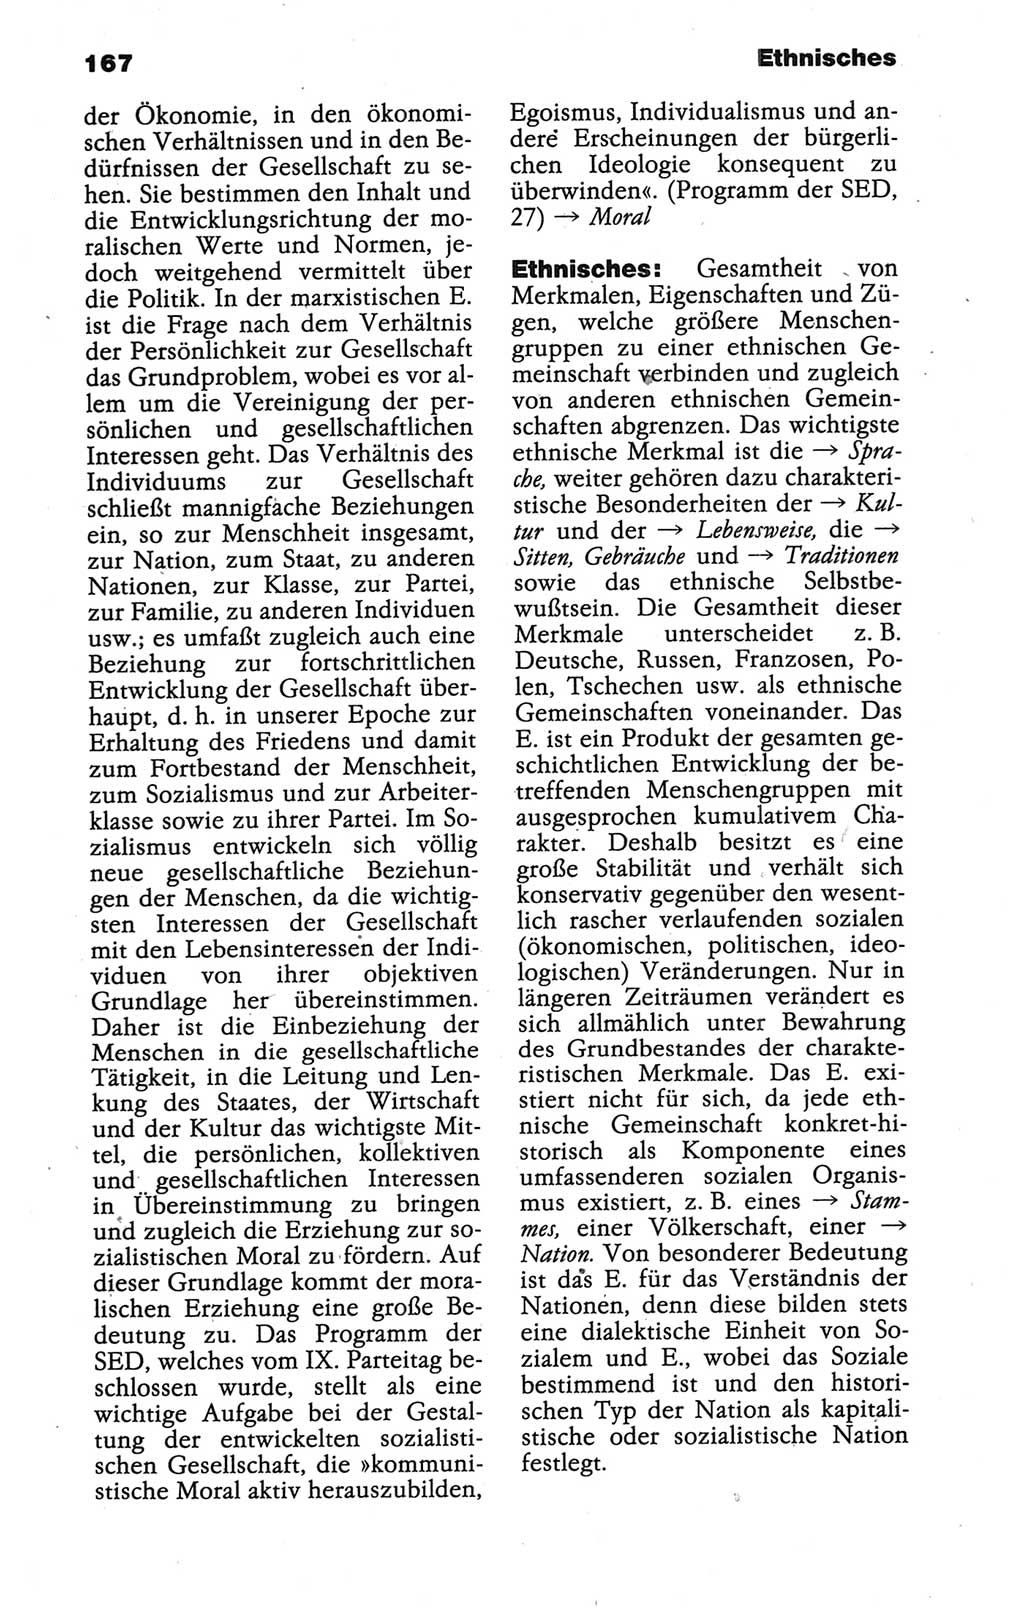 Wörterbuch der marxistisch-leninistischen Philosophie [Deutsche Demokratische Republik (DDR)] 1986, Seite 167 (Wb. ML Phil. DDR 1986, S. 167)